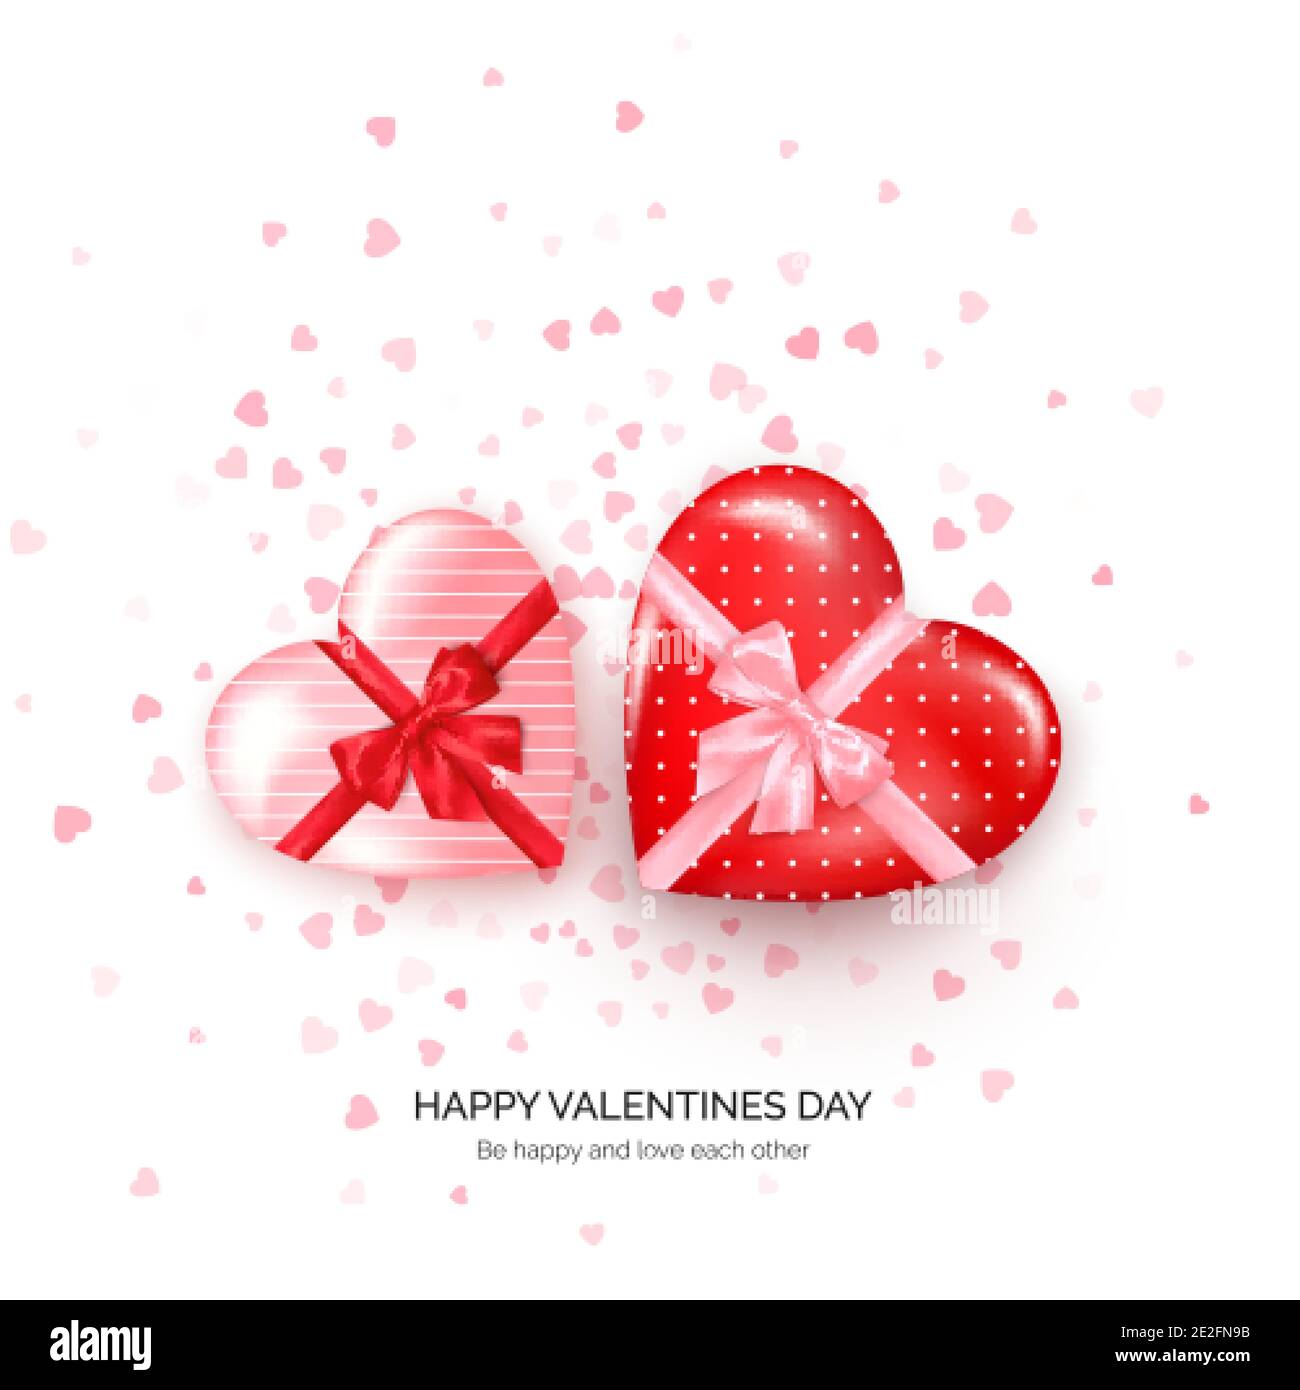 Herzförmige Geschenkschachteln mit Seidenschleife und Konfetti auf dem Hintergrund. Grußkarte zum Valentinstag. Vektorgrafik Stock Vektor